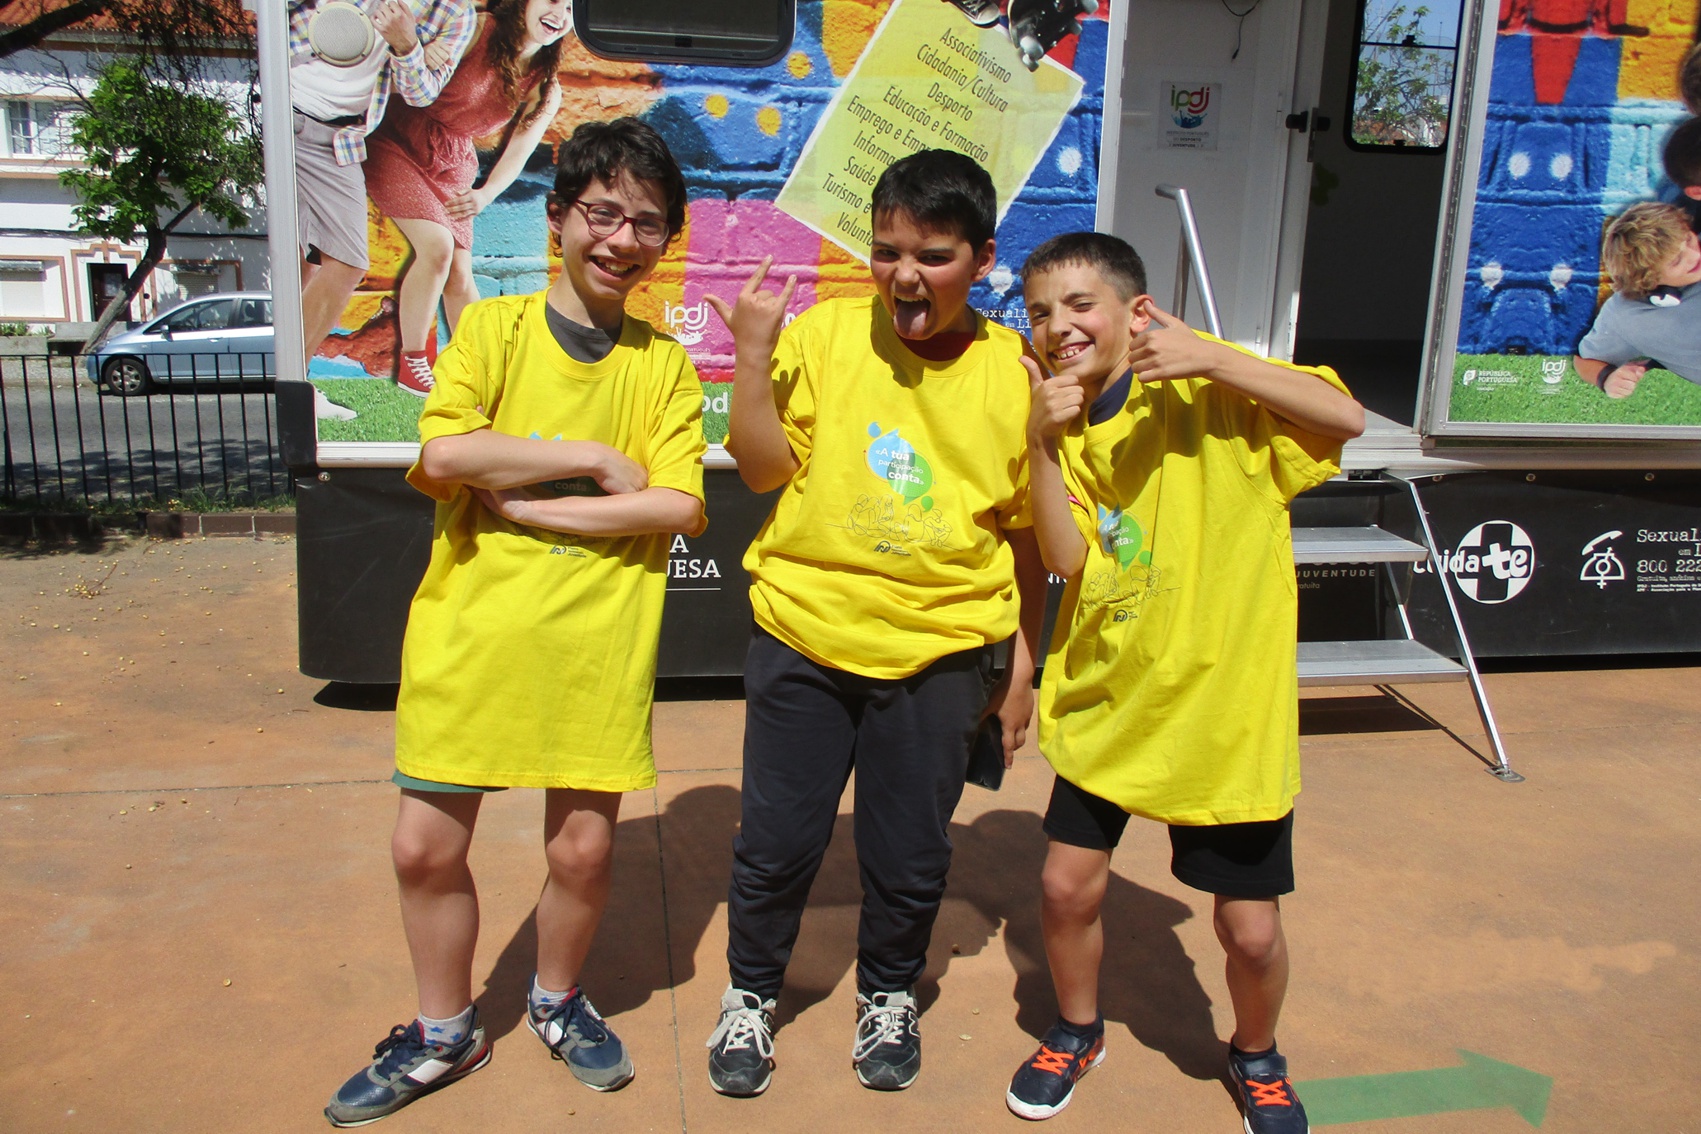 Jovens junto à Unidade Móvel Cuida-te +, após participação no jogo sobre programas IPDJ.